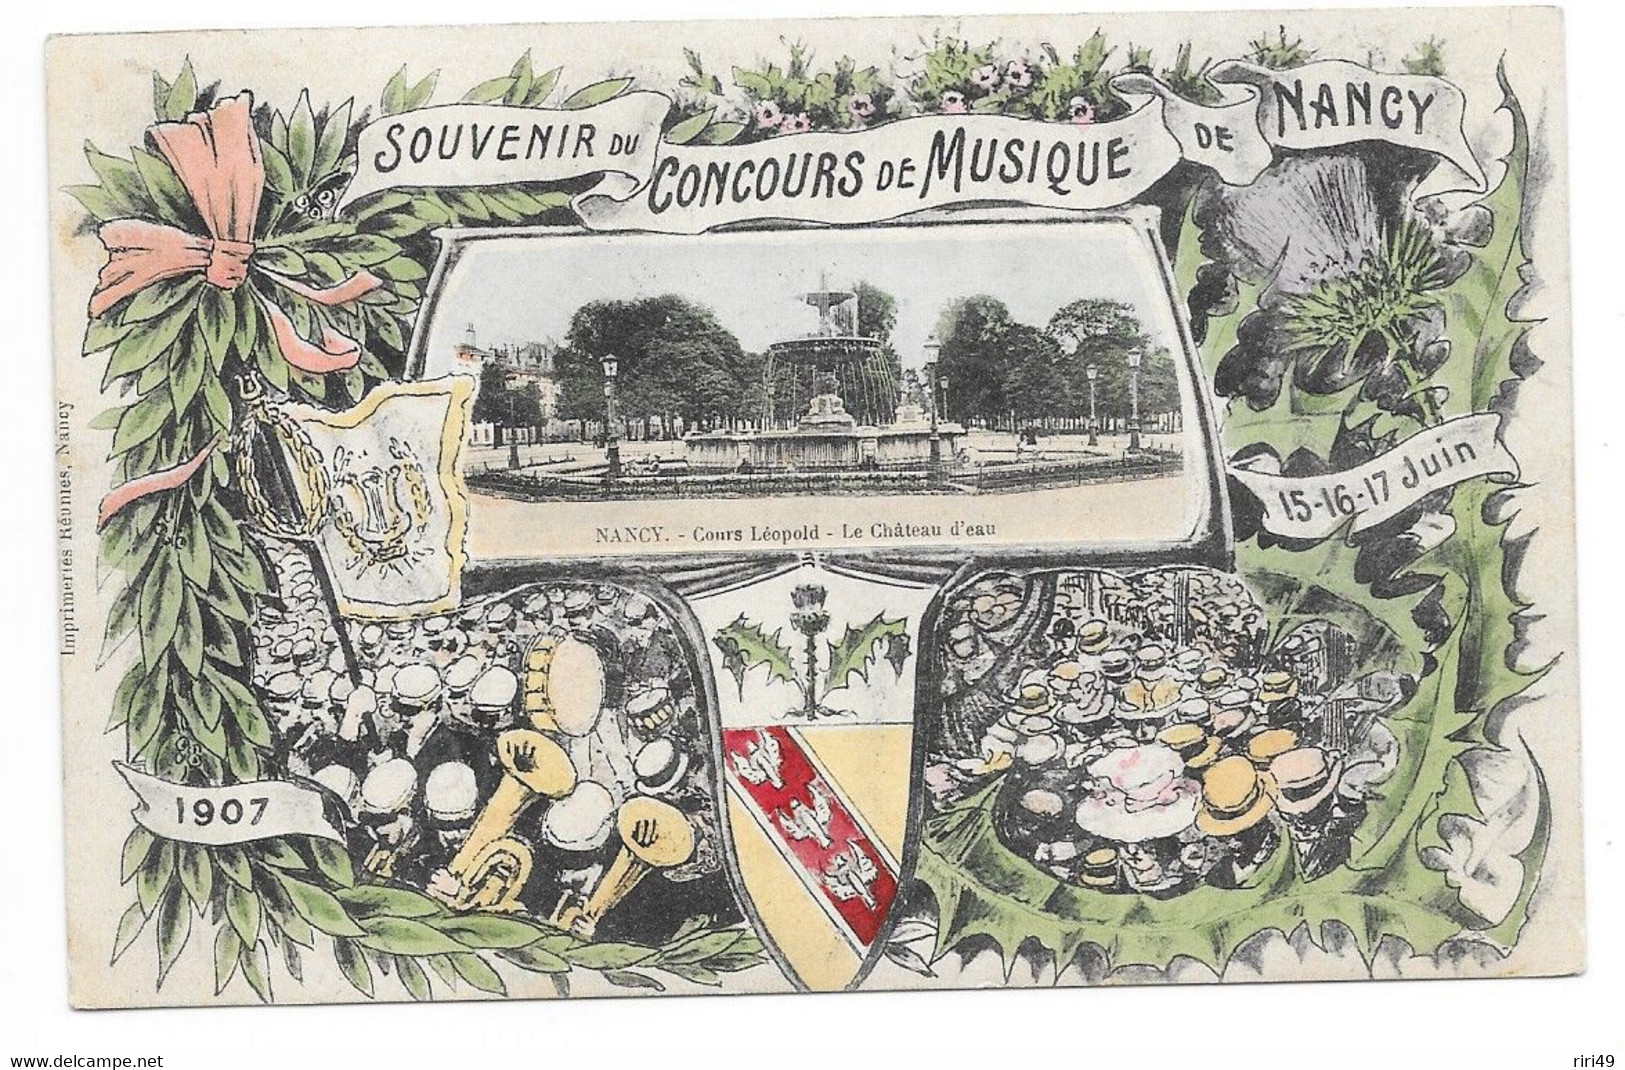 Cpa 54 NANCY, Souvenir Du Concours De Musique De NANCY, 15,16,17 JUIN 1907? VOYAG2E 1907 Belle Carte - Nancy